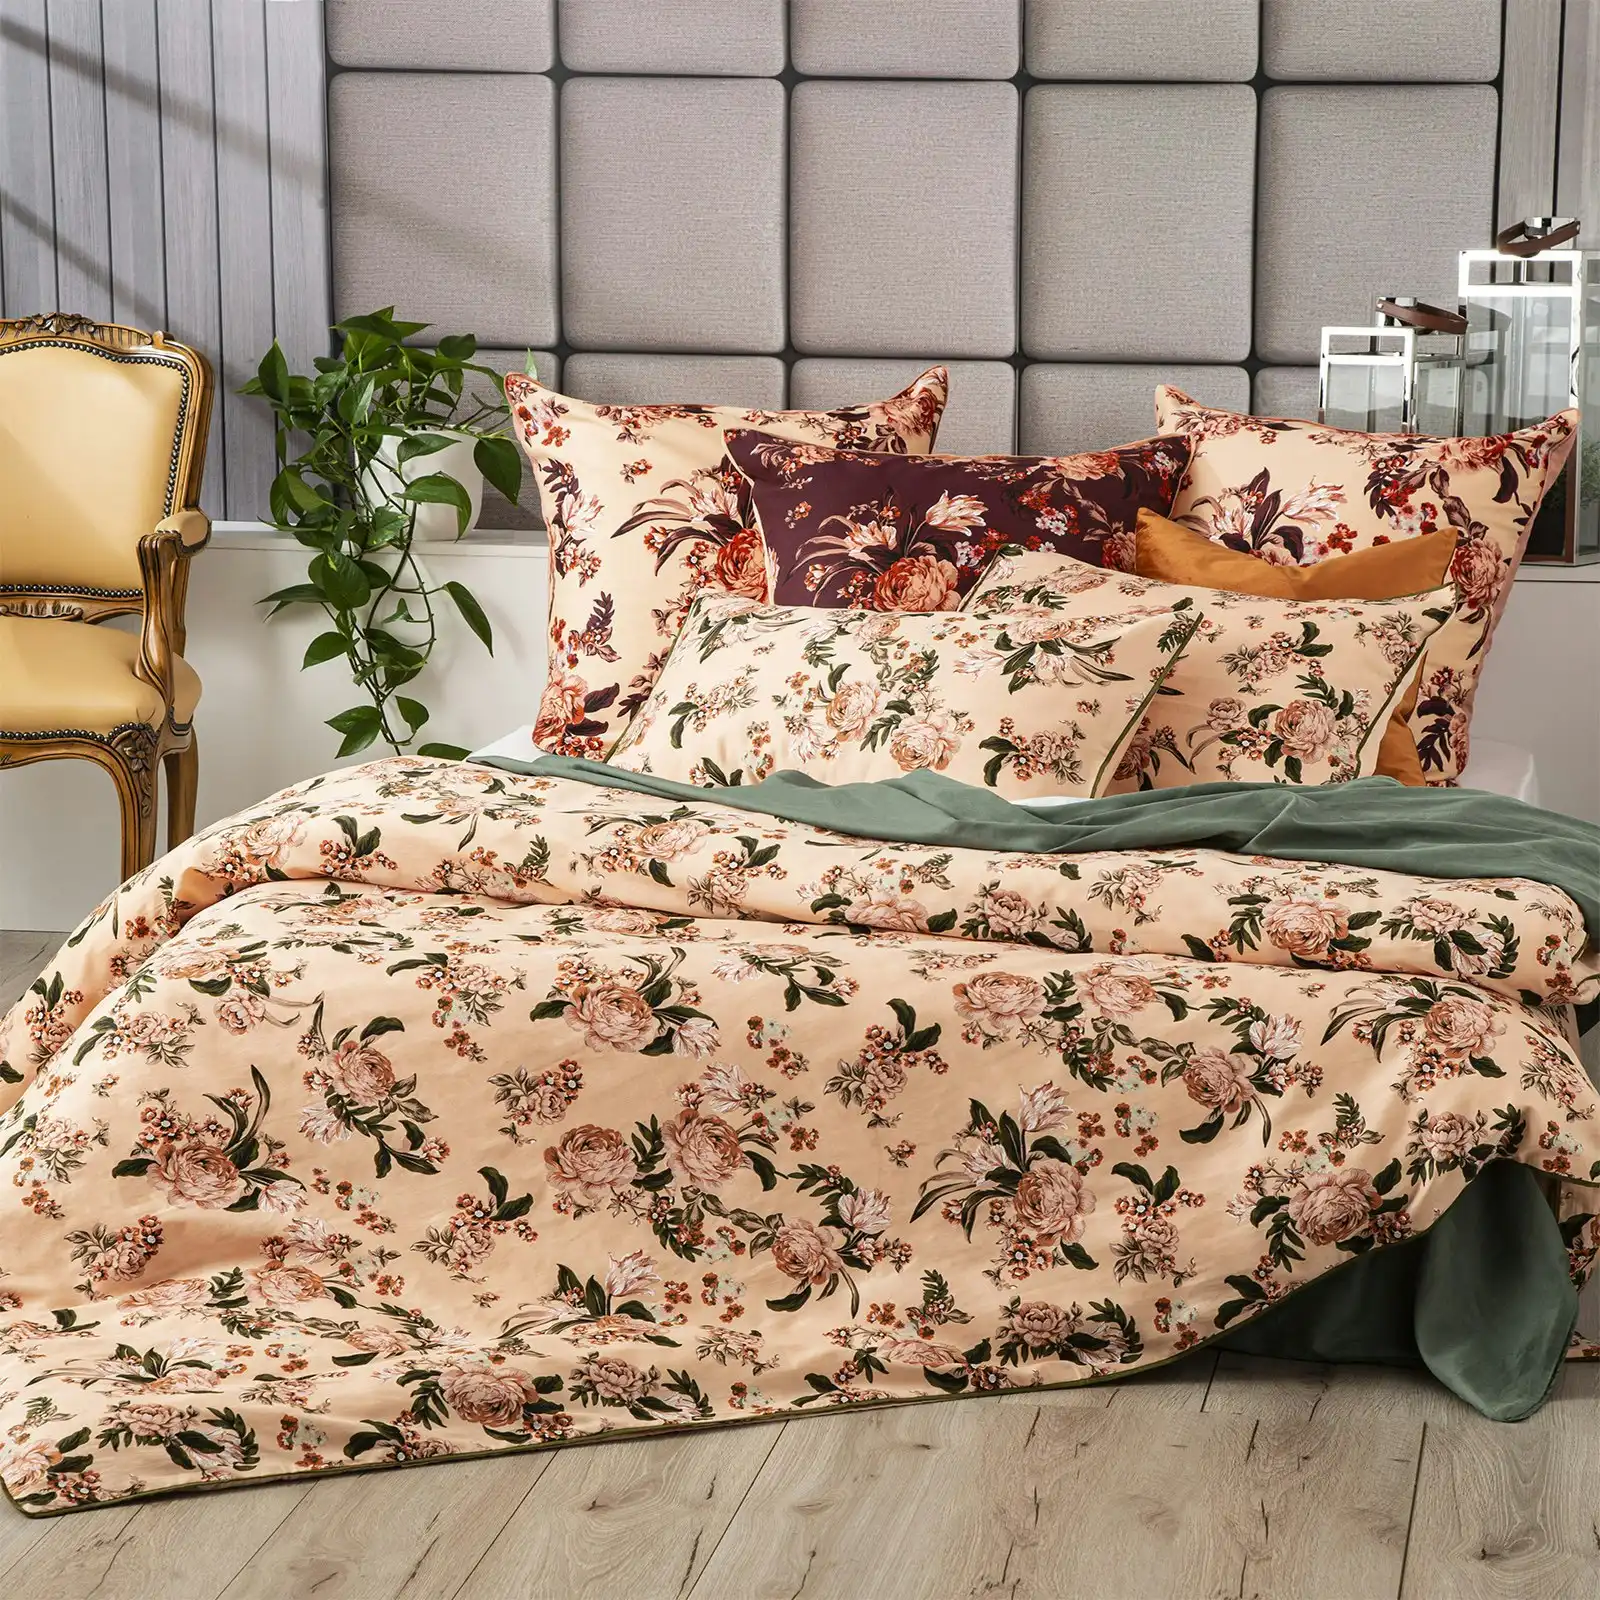 Renee Taylor 65cm Euro Pillowcase 300TC Cotton Pillow Cover Bed Secret Garden